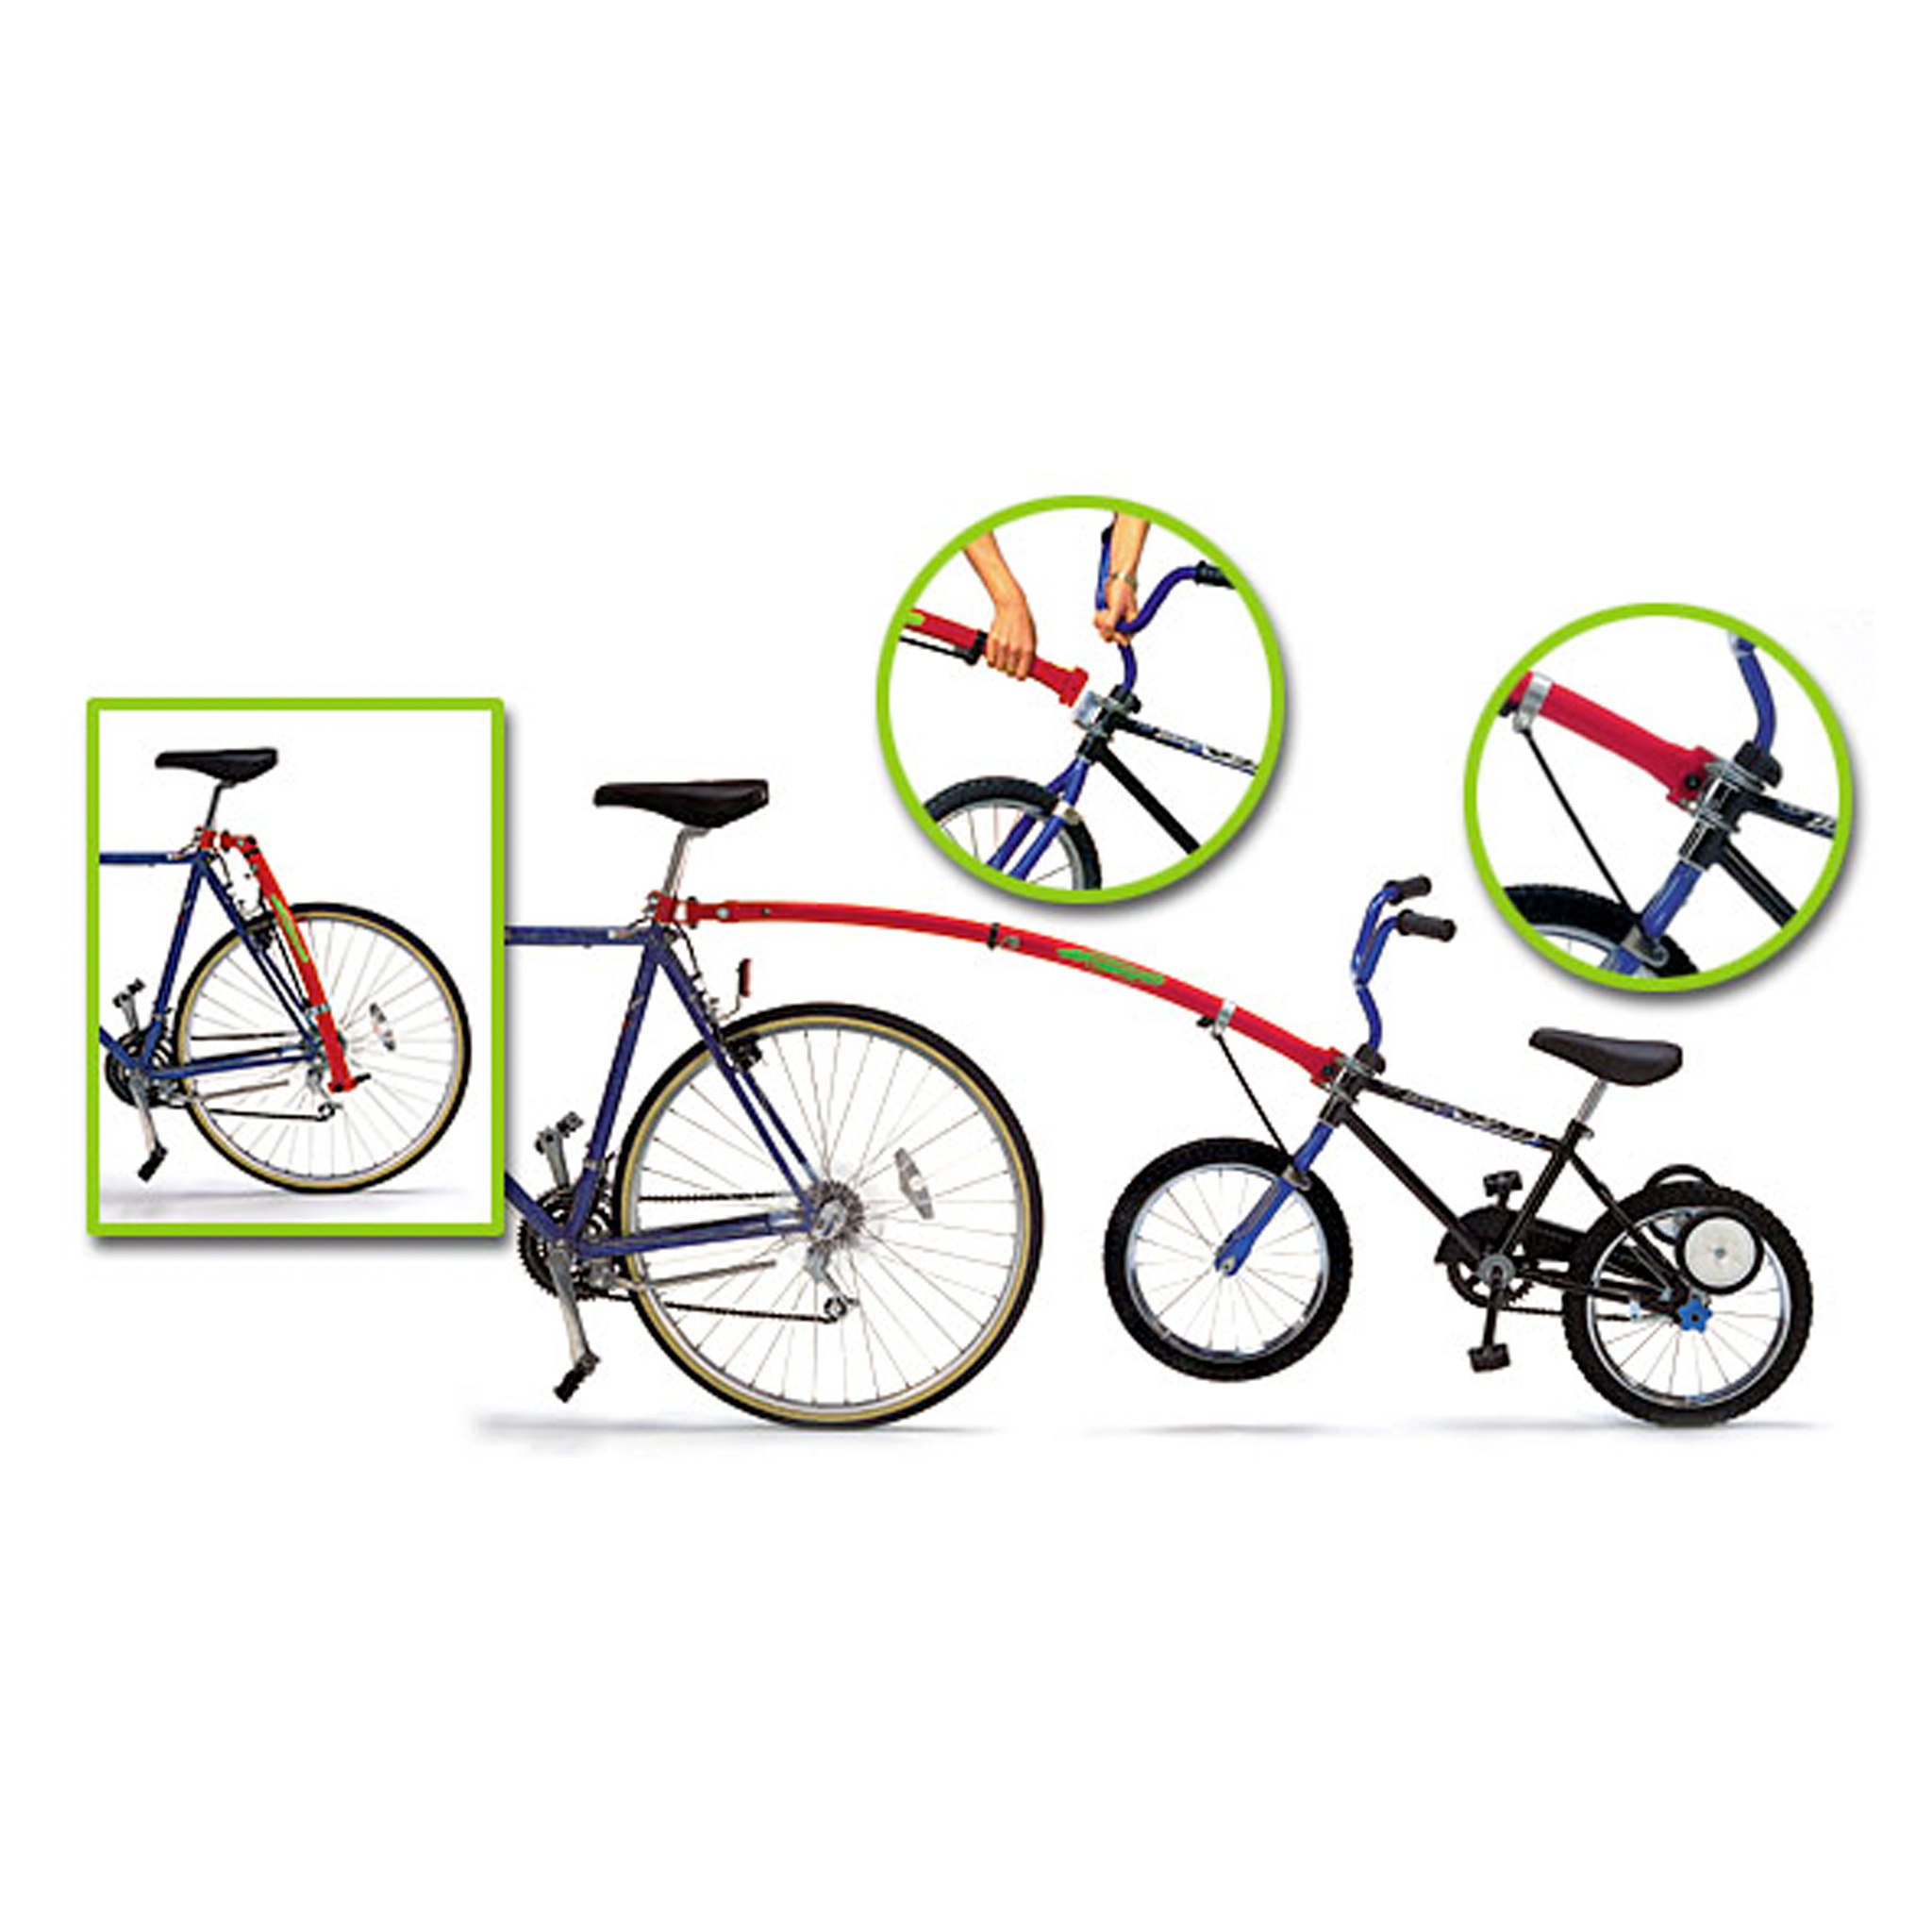 Roues stabilisatrices réglables pour vélo d'enfants Supercycle